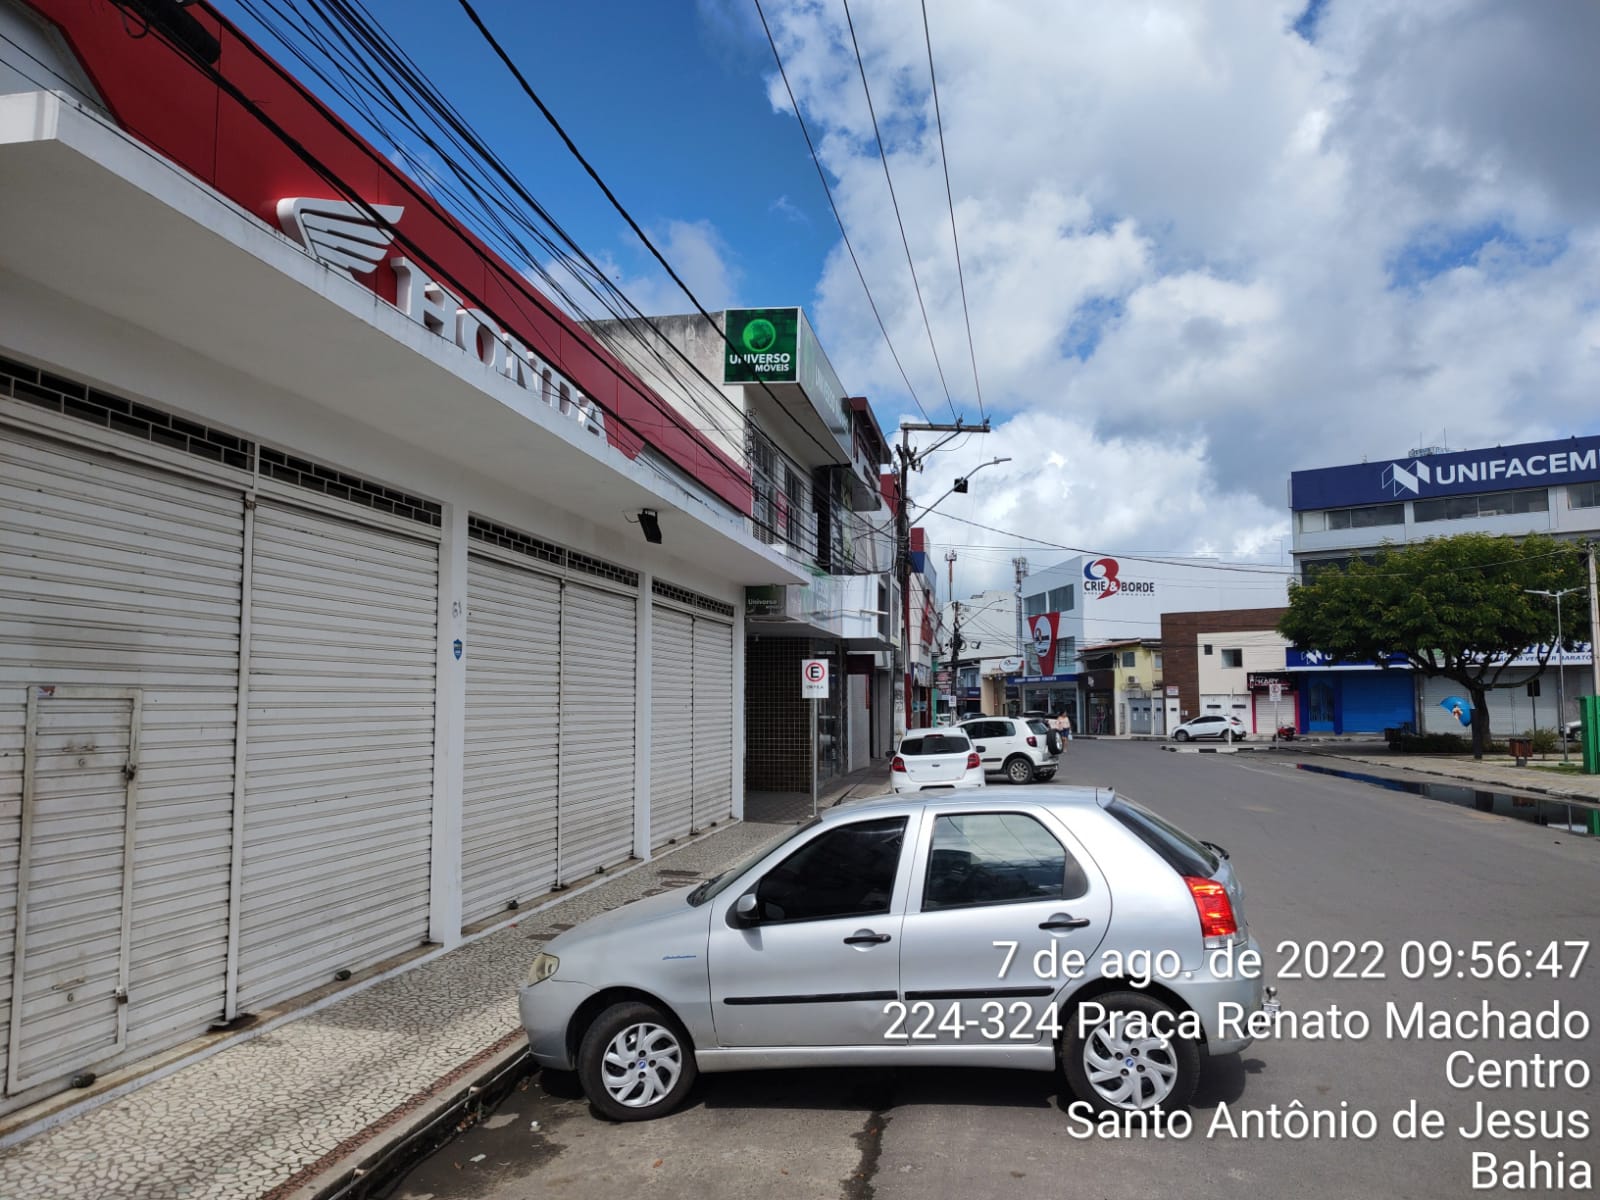 Prefeitura informa sobre alteração na forma de estacionar na Praça Renato Machado e Travessa Quinze de Novembro